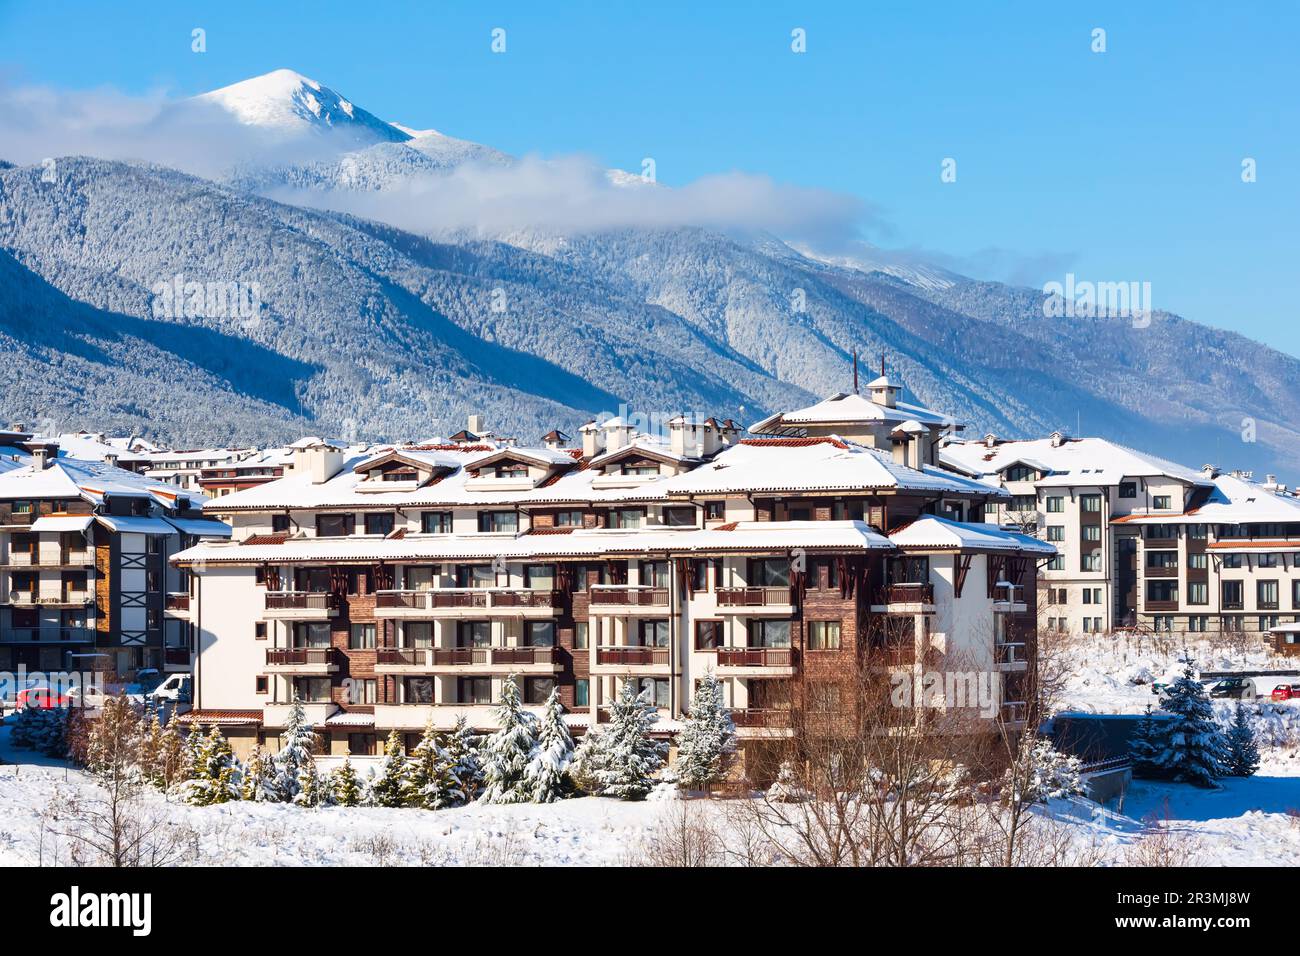 Maisons et montagnes de neige panorama dans la station de ski bulgare Bansko Banque D'Images